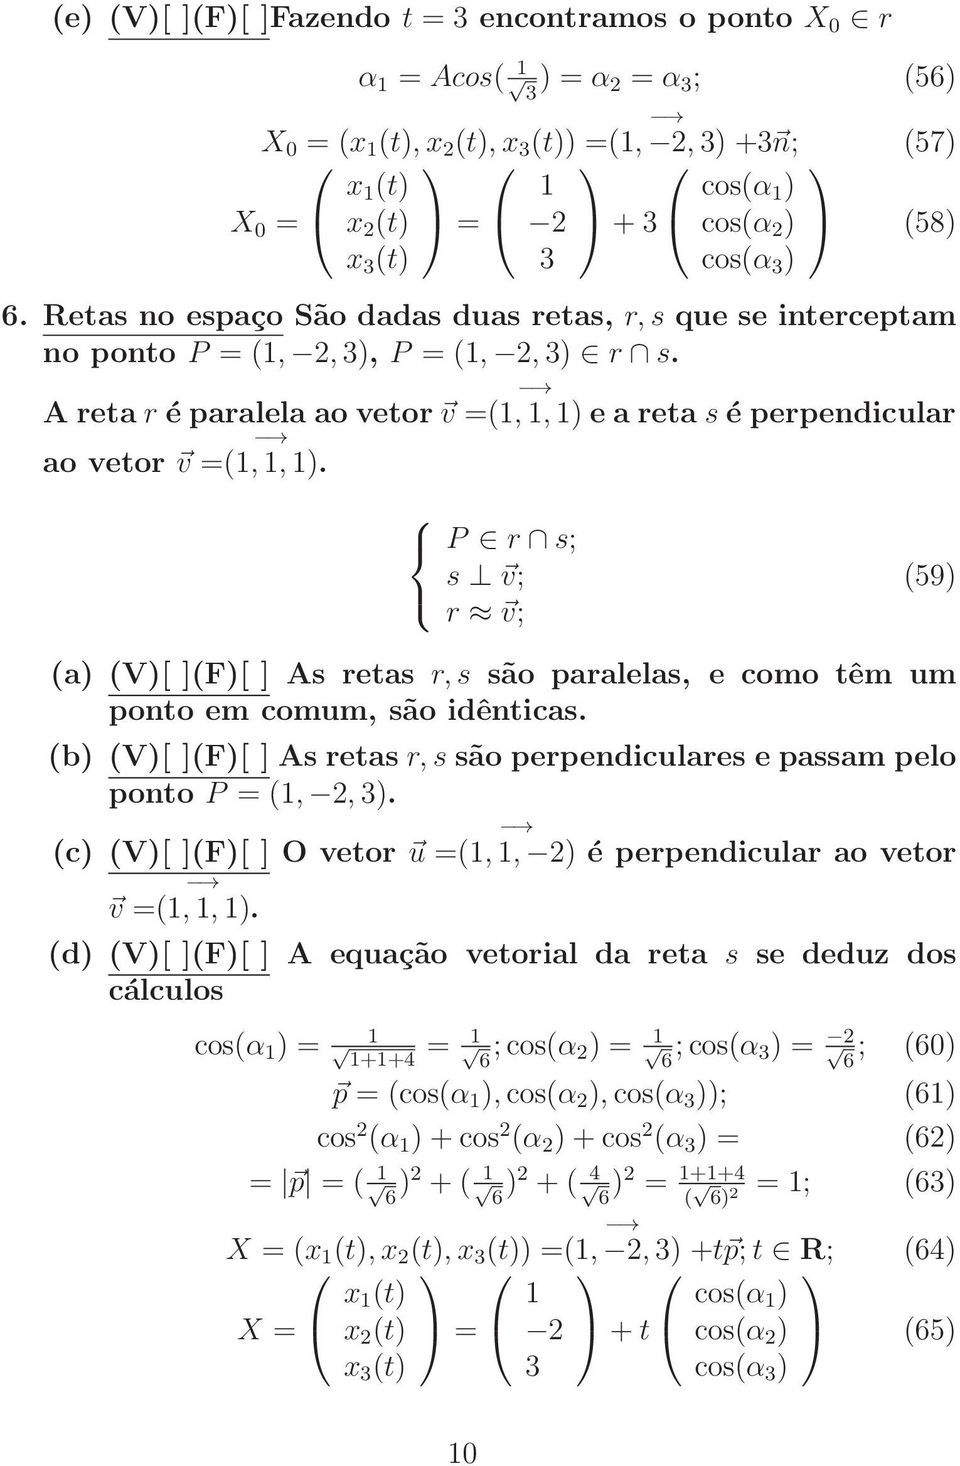 A reta r é paralela ao vetor v = (1, 1, 1) e a reta s é perpendicular ao vetor v = (1, 1, 1).